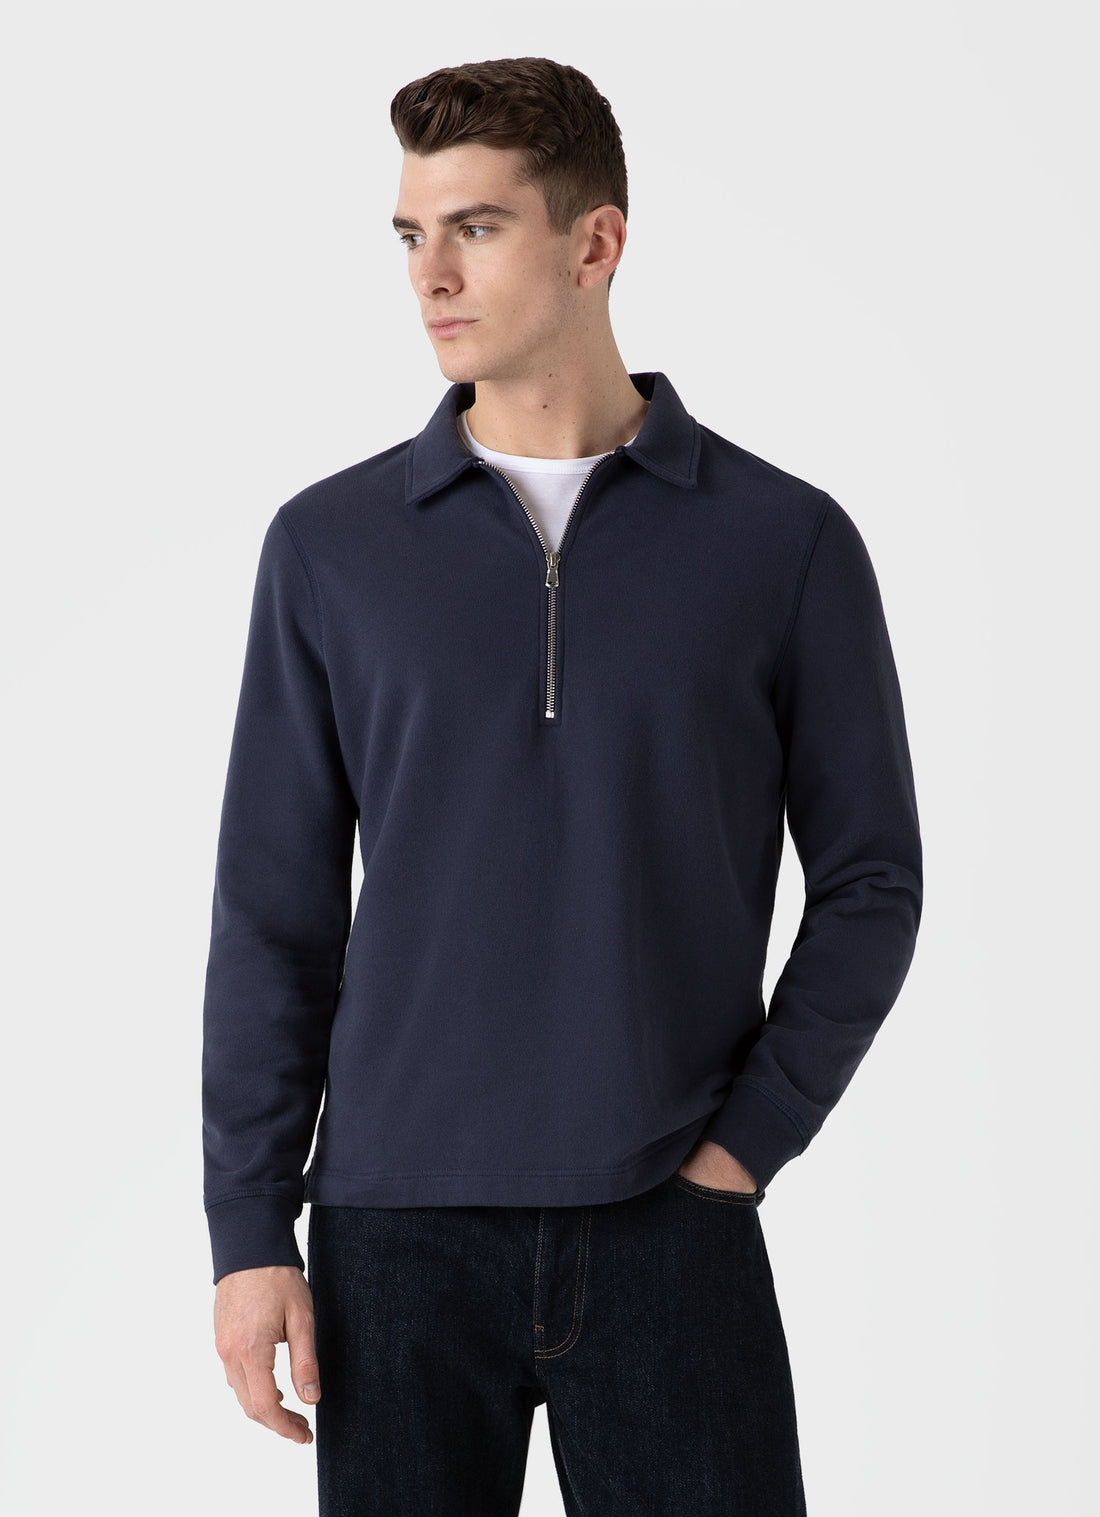 Men's Zip Polo Loopback Sweatshirt in Navy